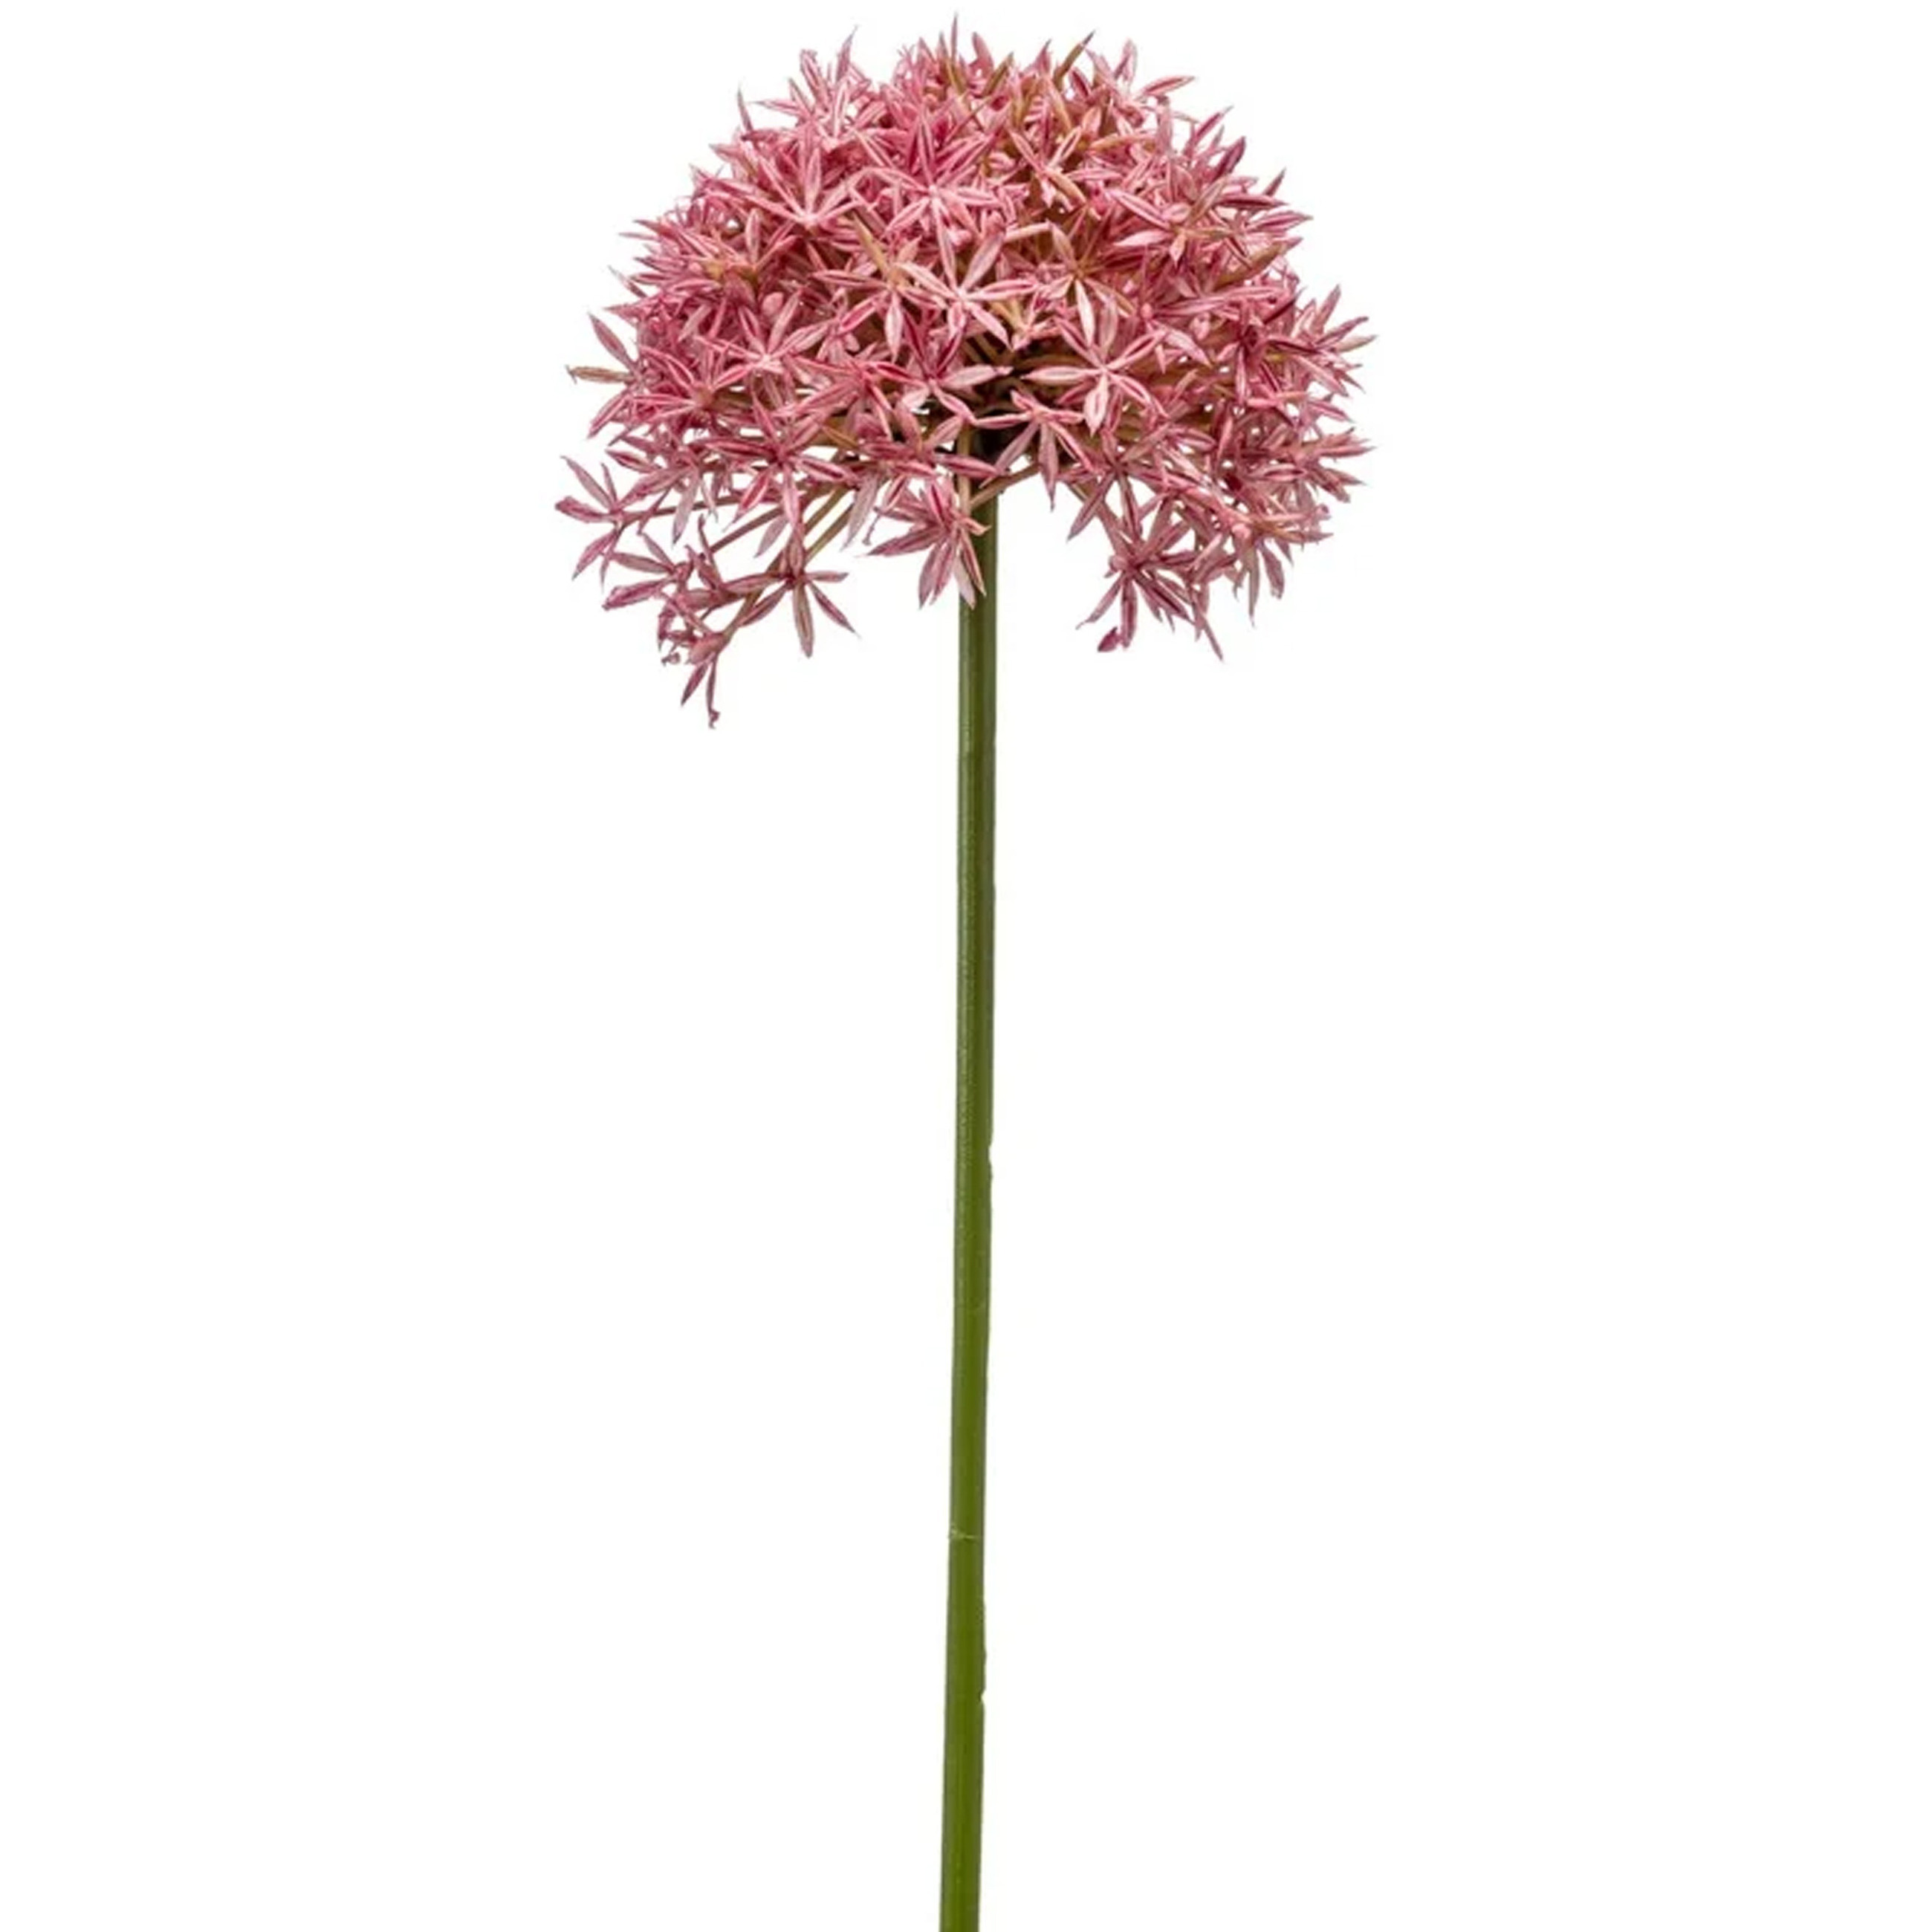 Allium-Sierui kunstbloem losse steel roze 62 cm Natuurlijke uitstraling